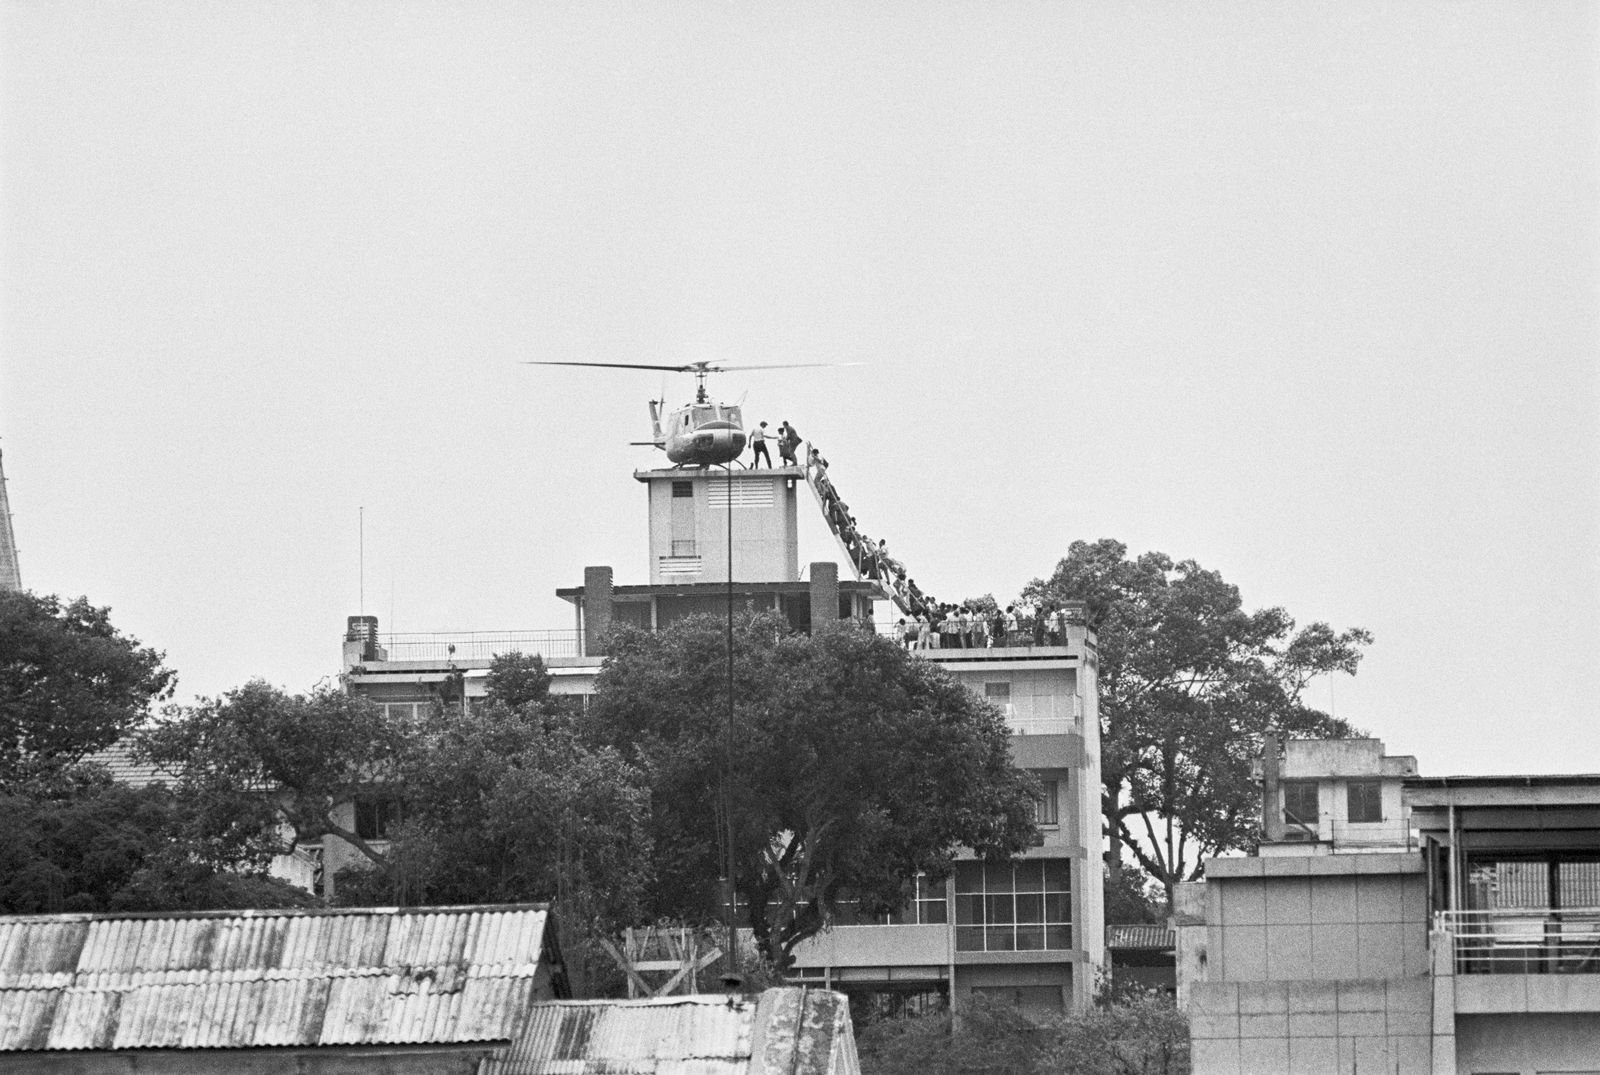 عنصر في وكالة الاستخبارات المركزية الأميركية يساعد فيتناميين لدى إجلائهم إلى مروحية على سطح مبنى في سايغون - 29 أبريل 1975 - Getty